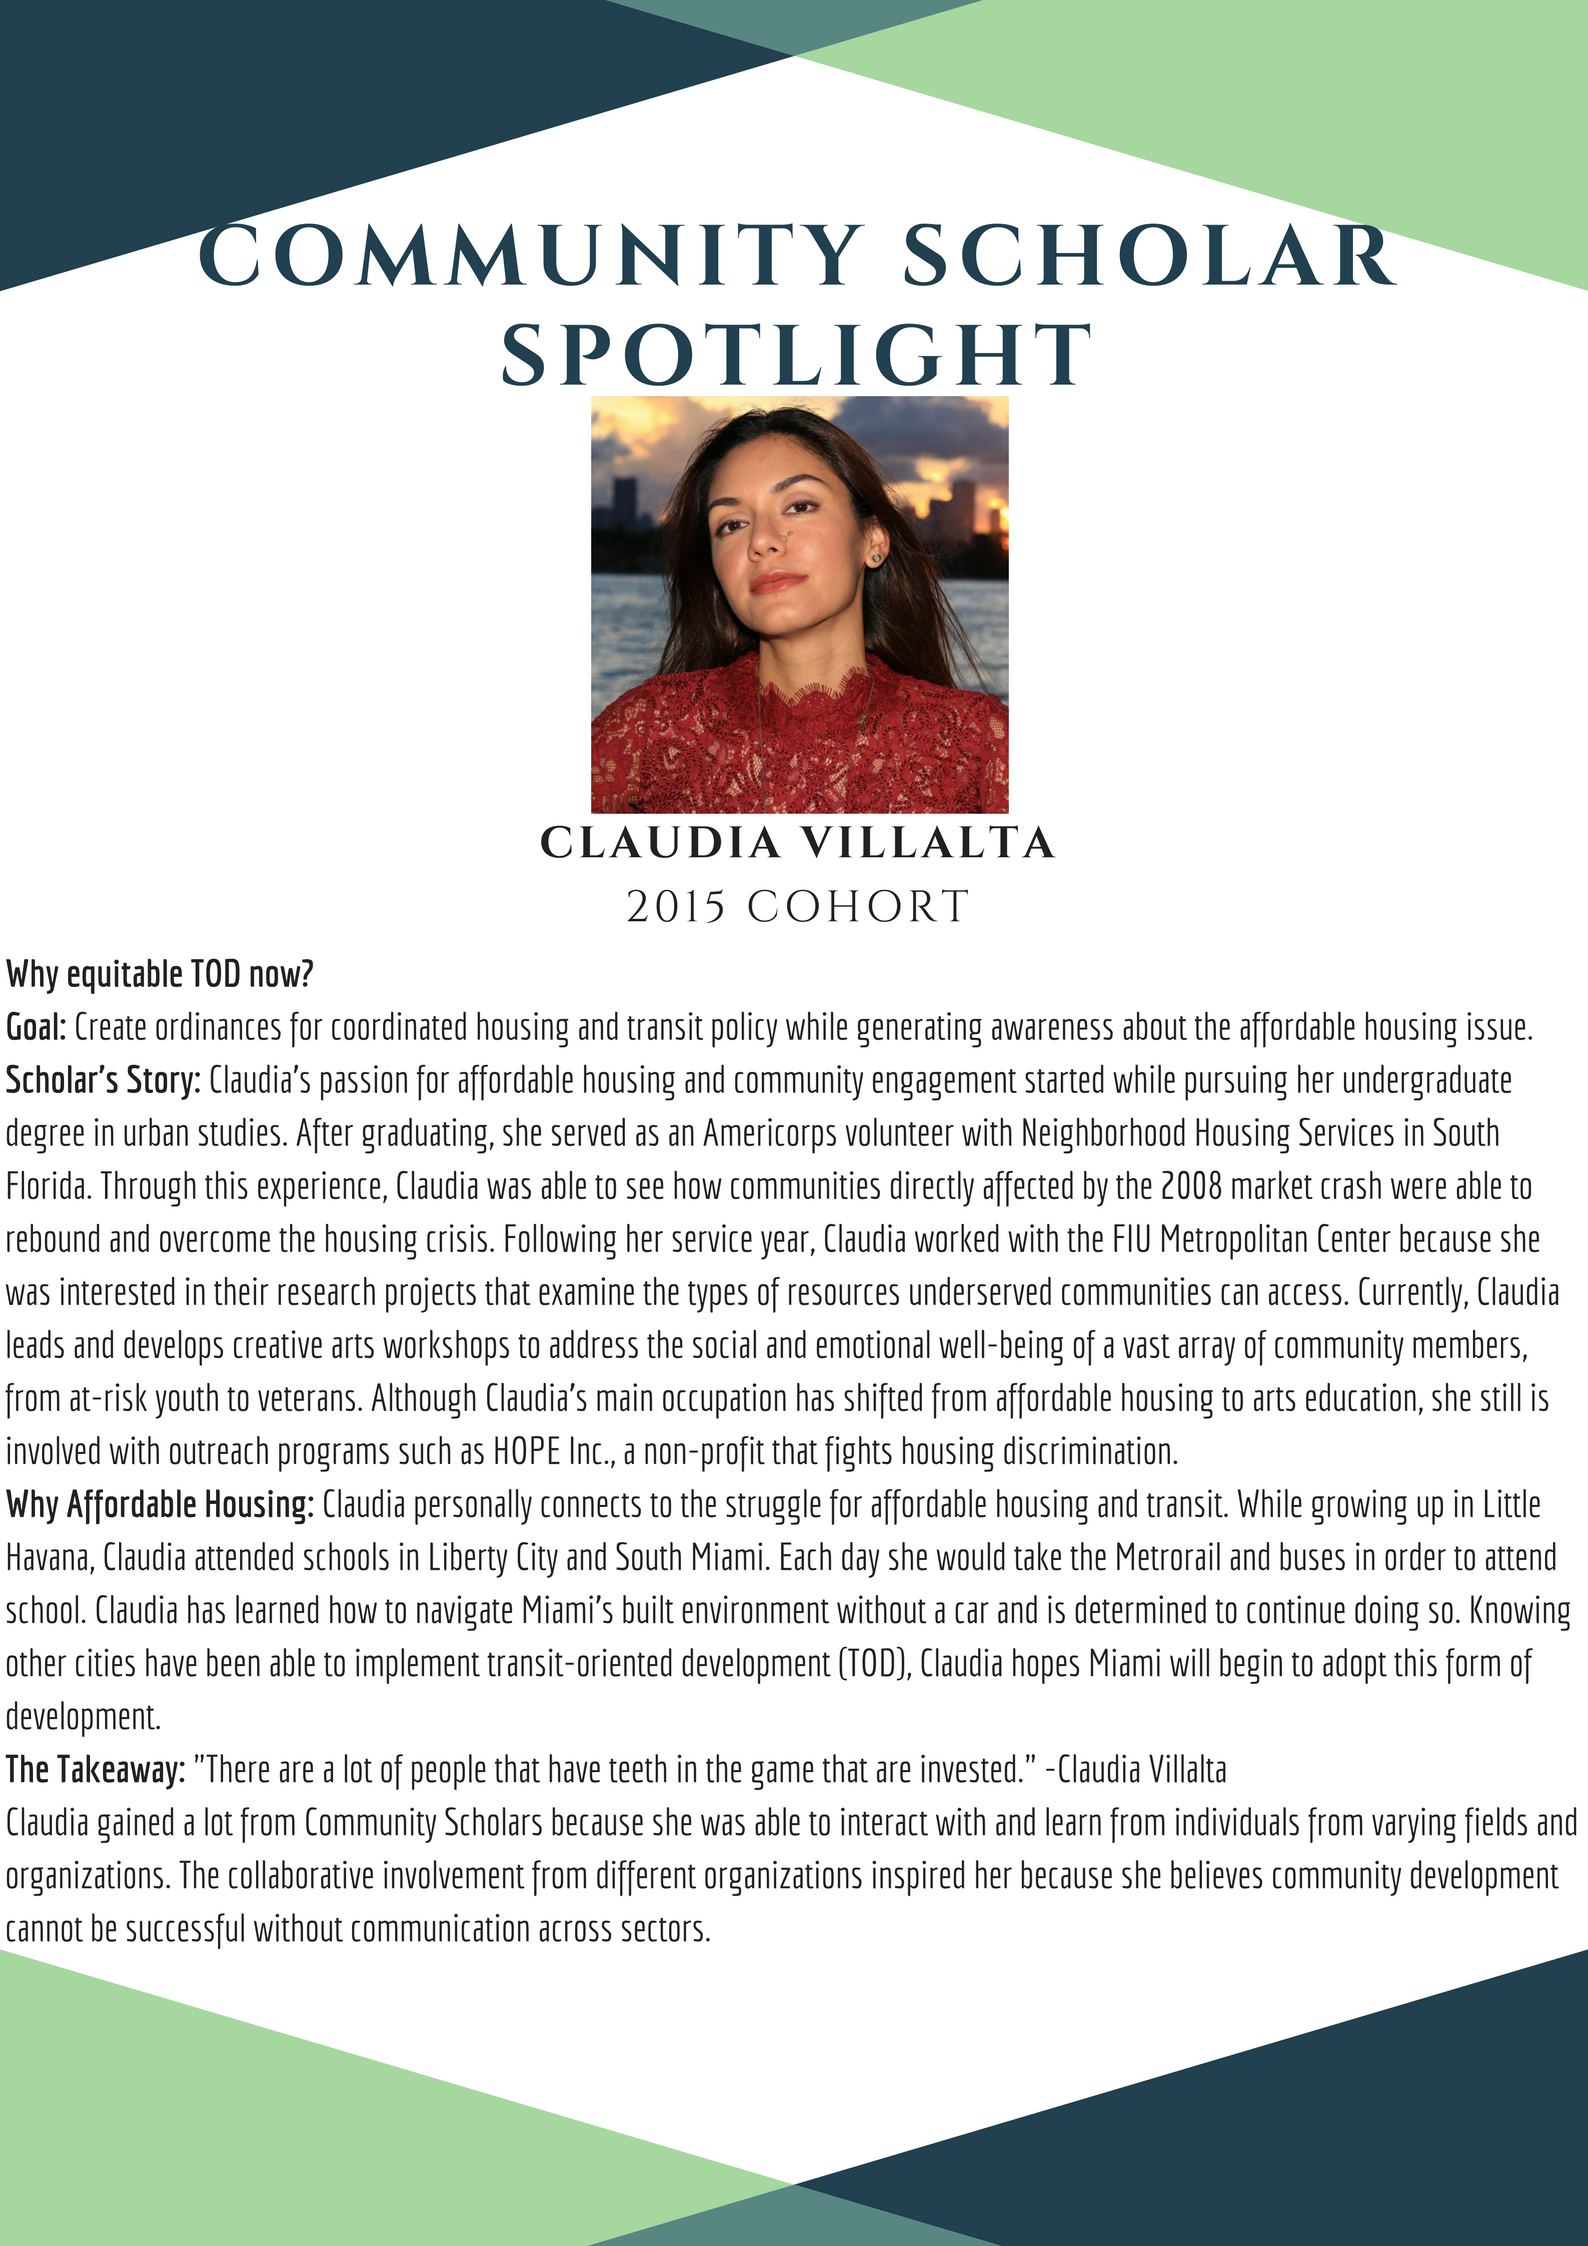 Claudia Villalta Community Scholar Spotlight